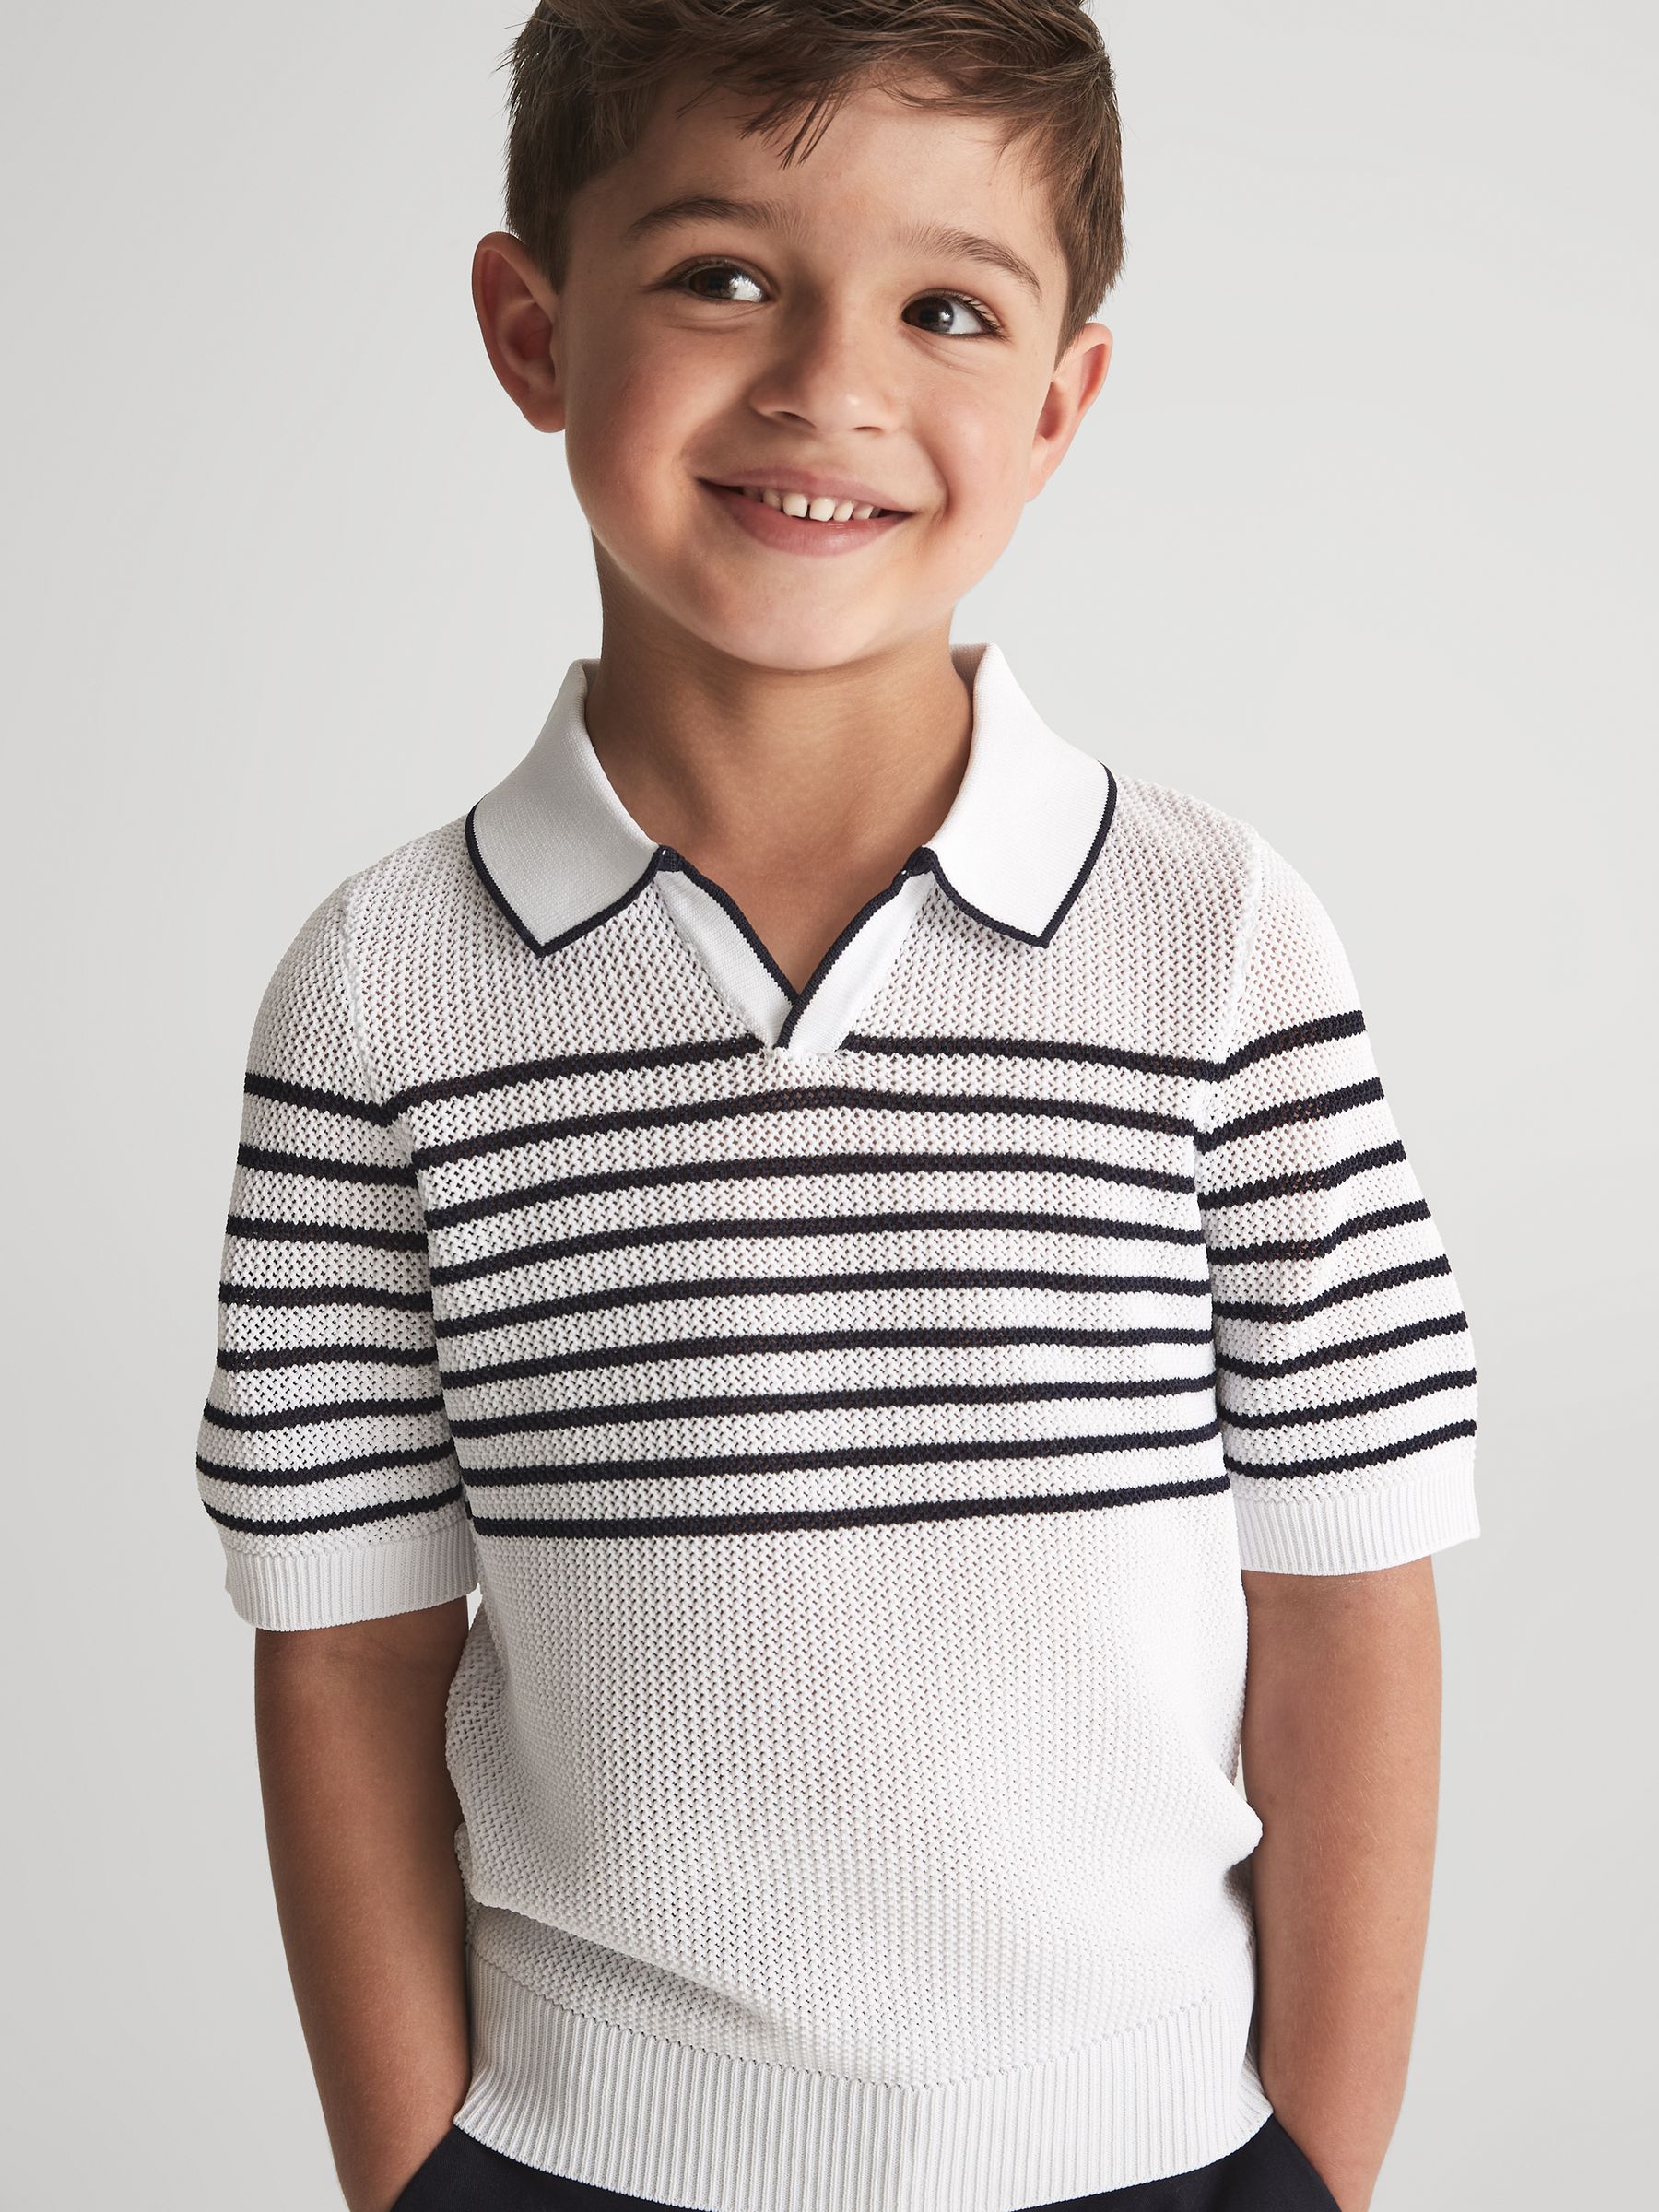 Reiss Admiral Junior Open Collar Striped Polo T-Shirt - REISS